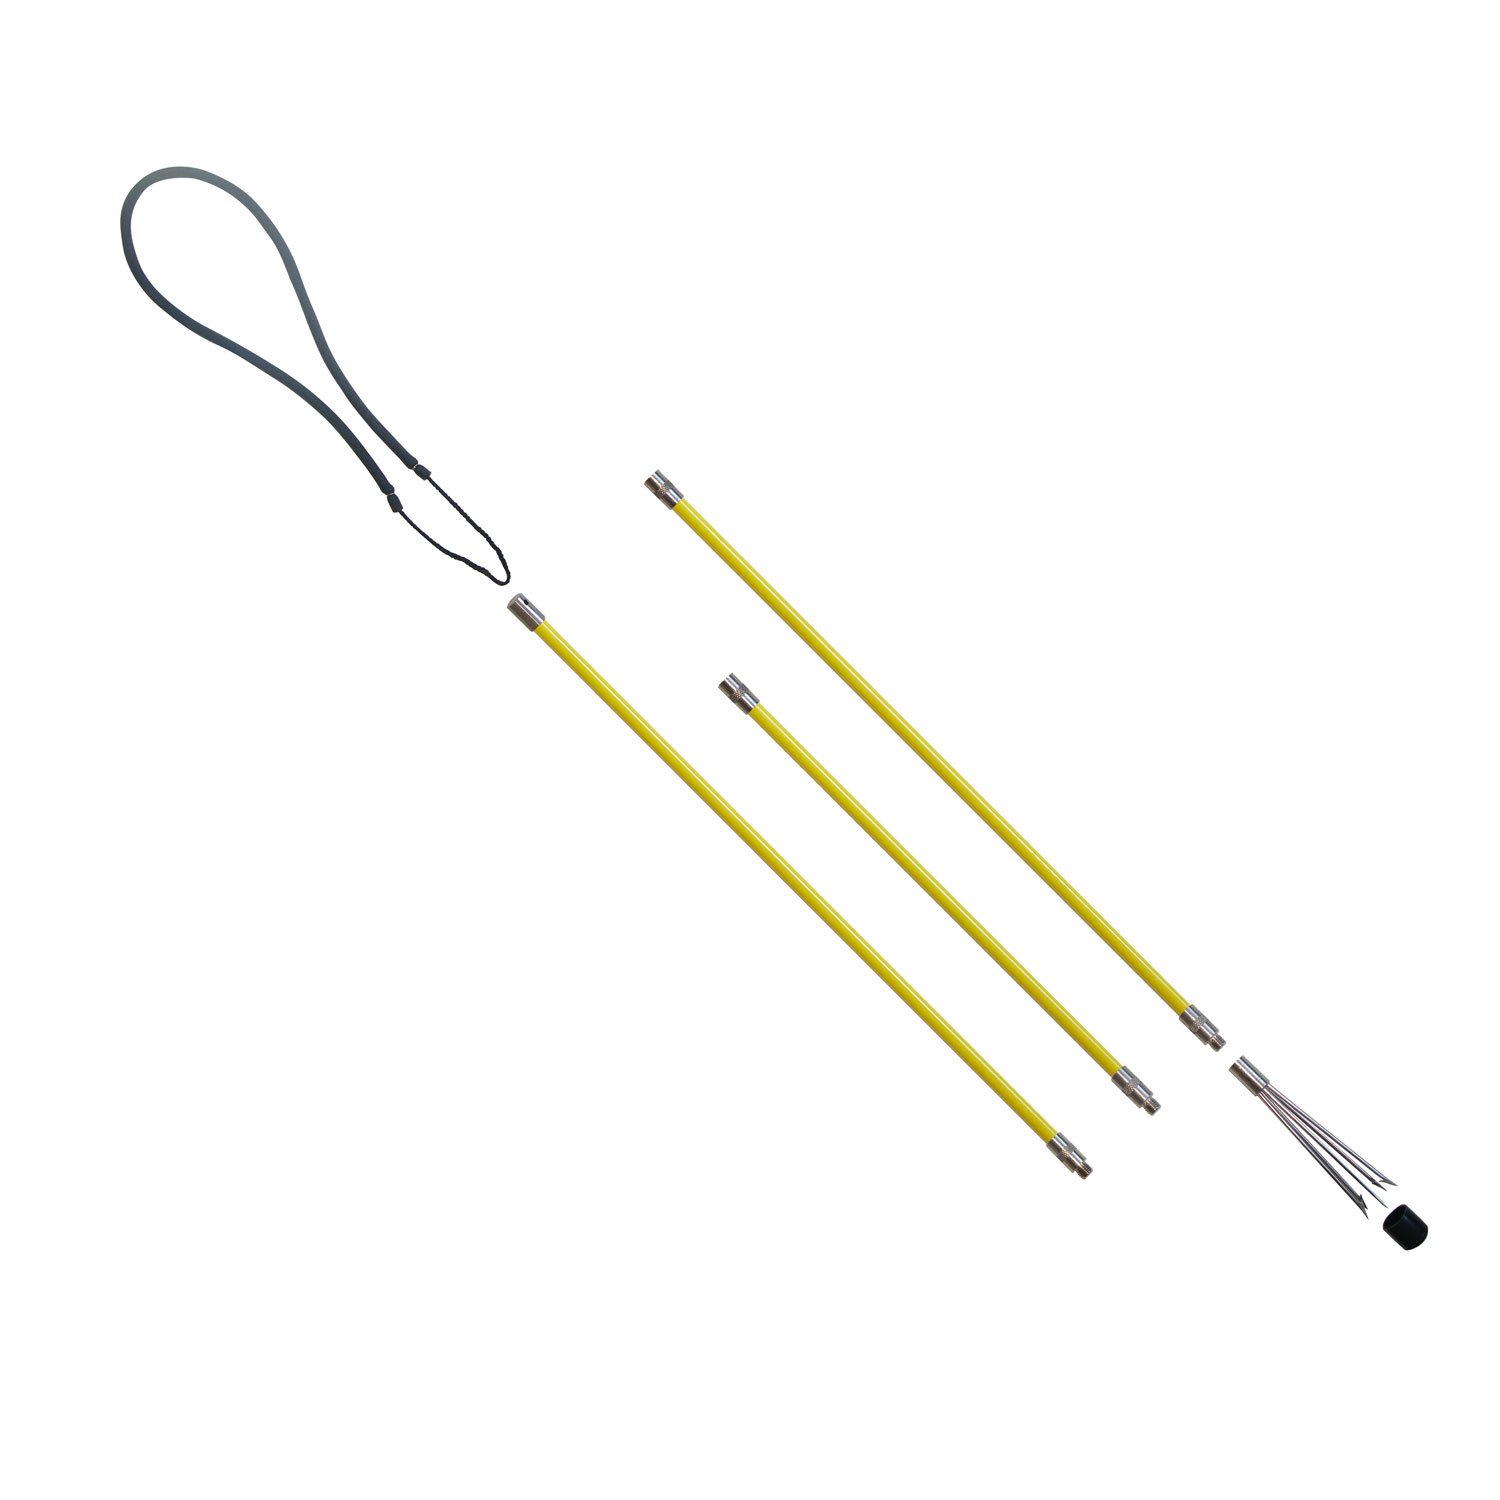 https://spearfishingstore.co.uk/wp-content/uploads/2021/10/sfs-2-metre-3-piece-fibre-glass-pole-spear-240.jpg